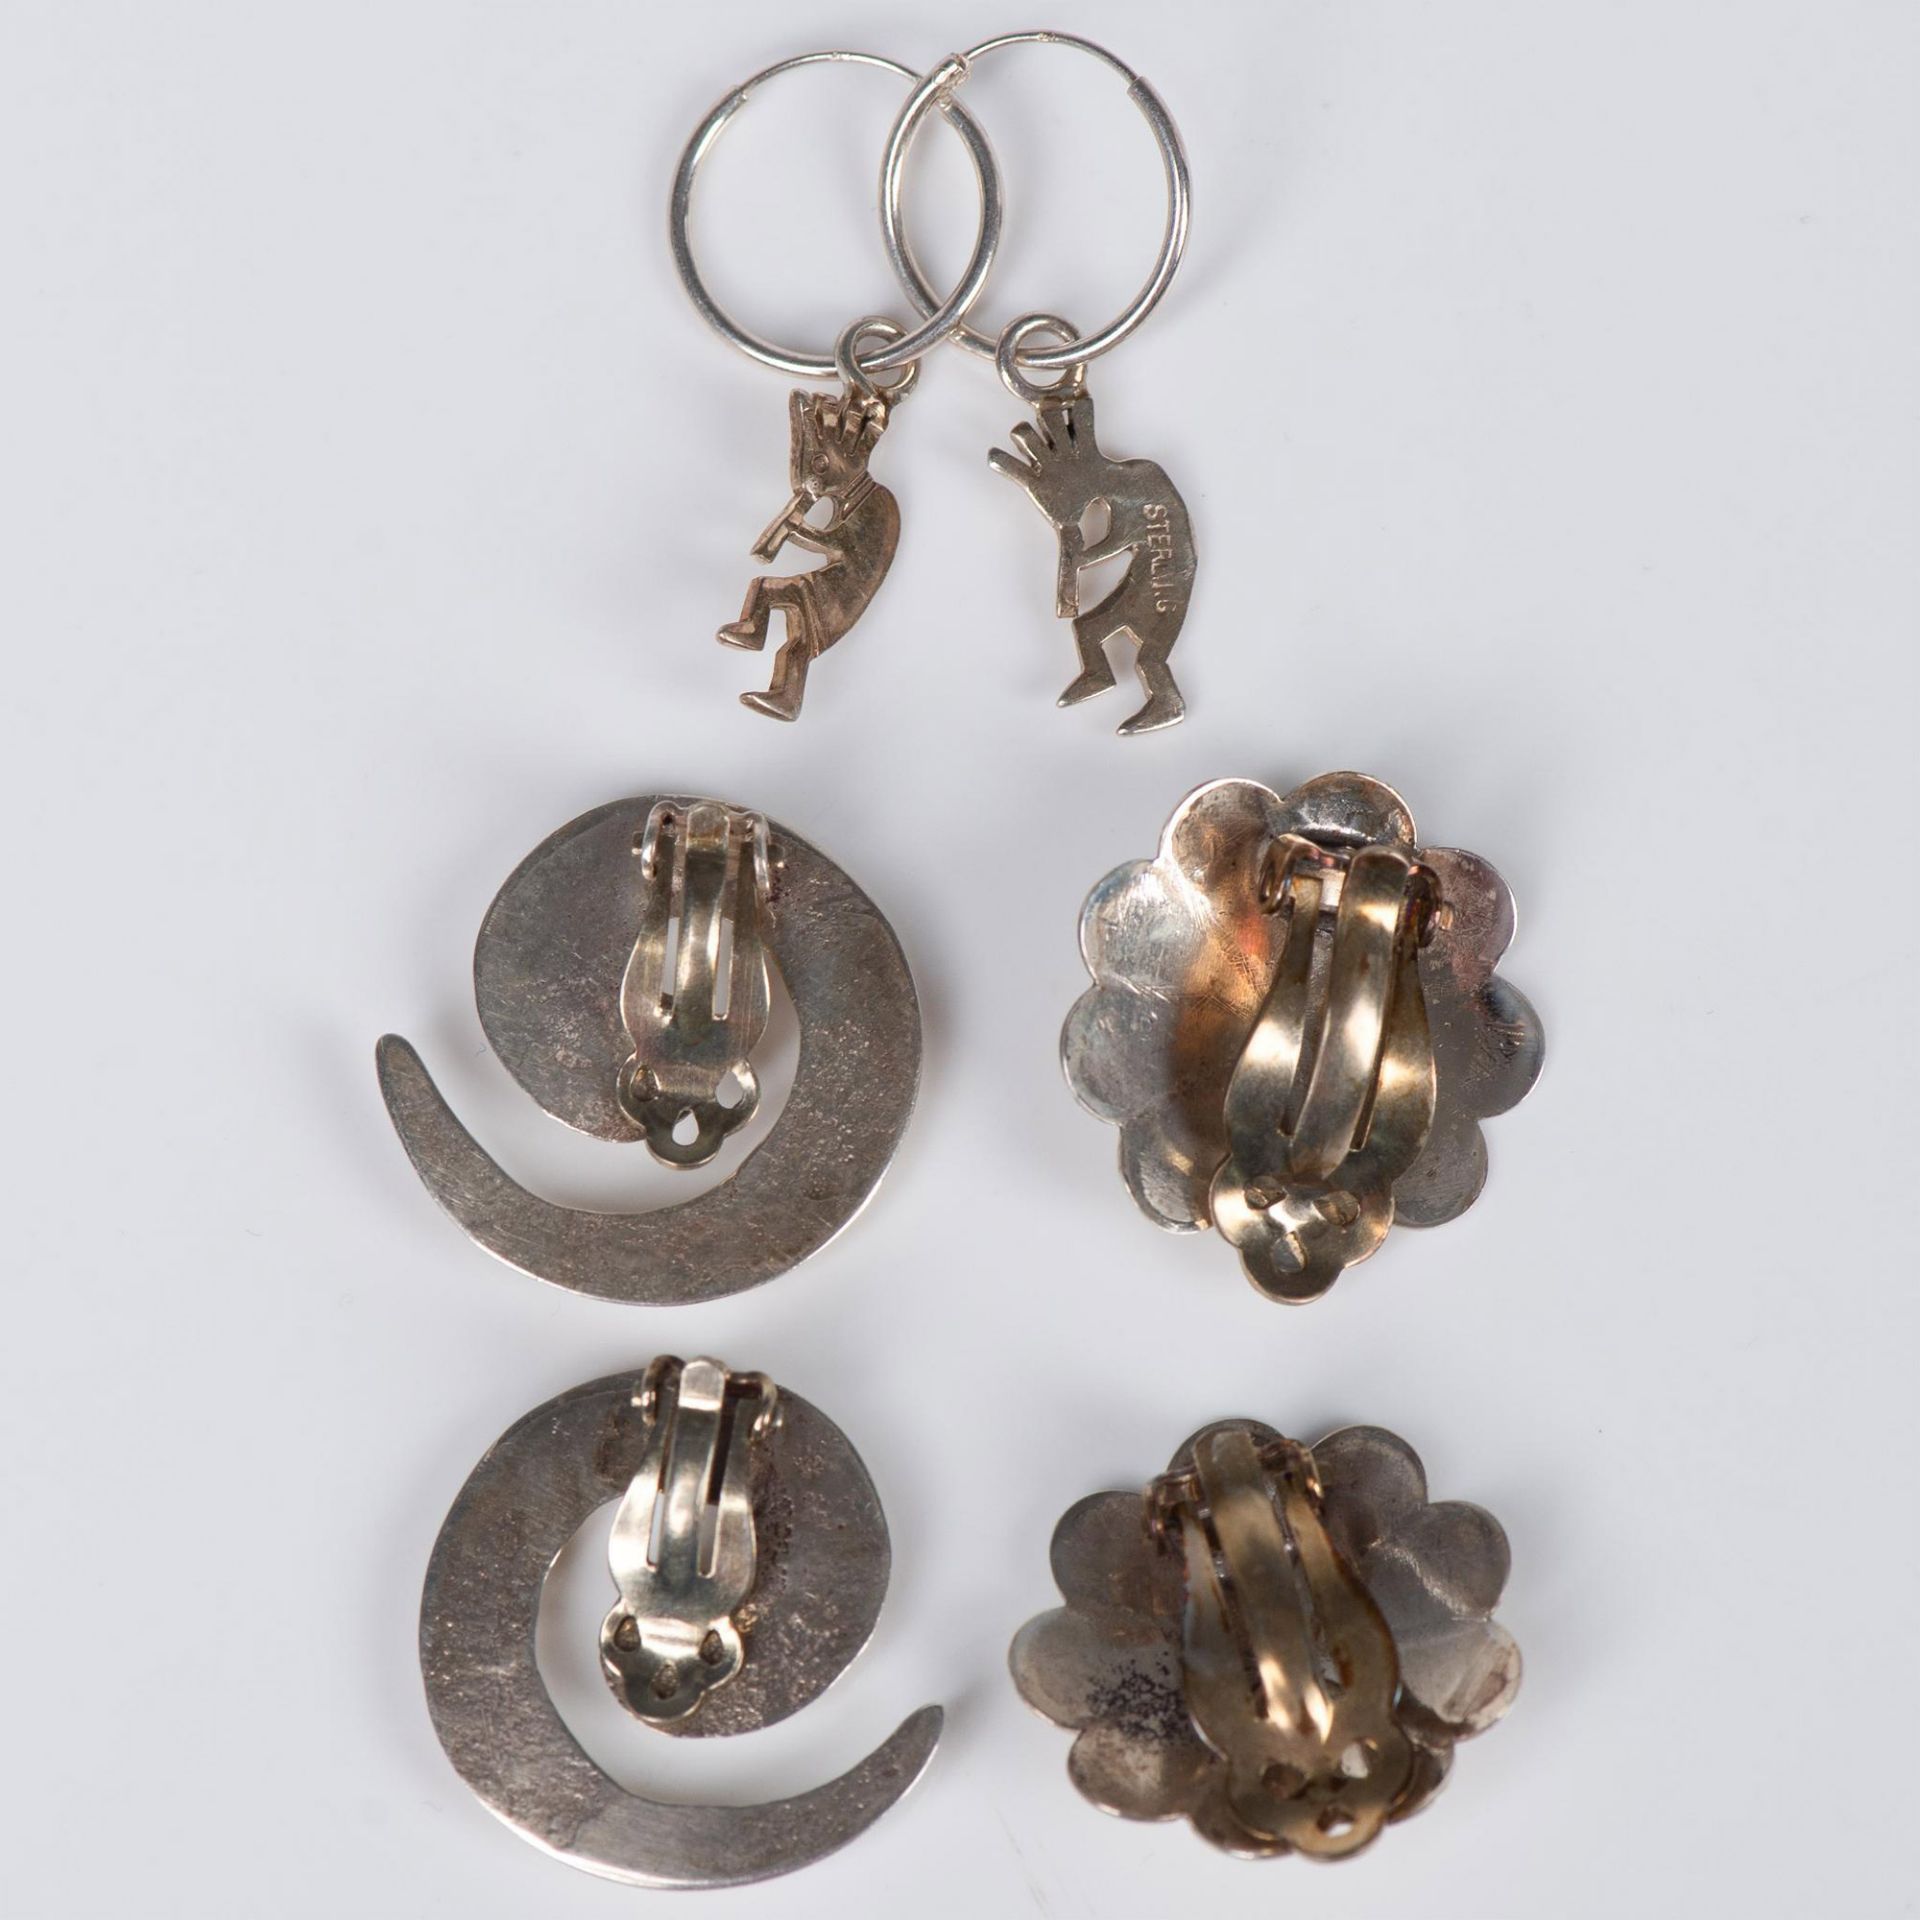 3 Pair of Sterling Silver Earrings - Image 2 of 2